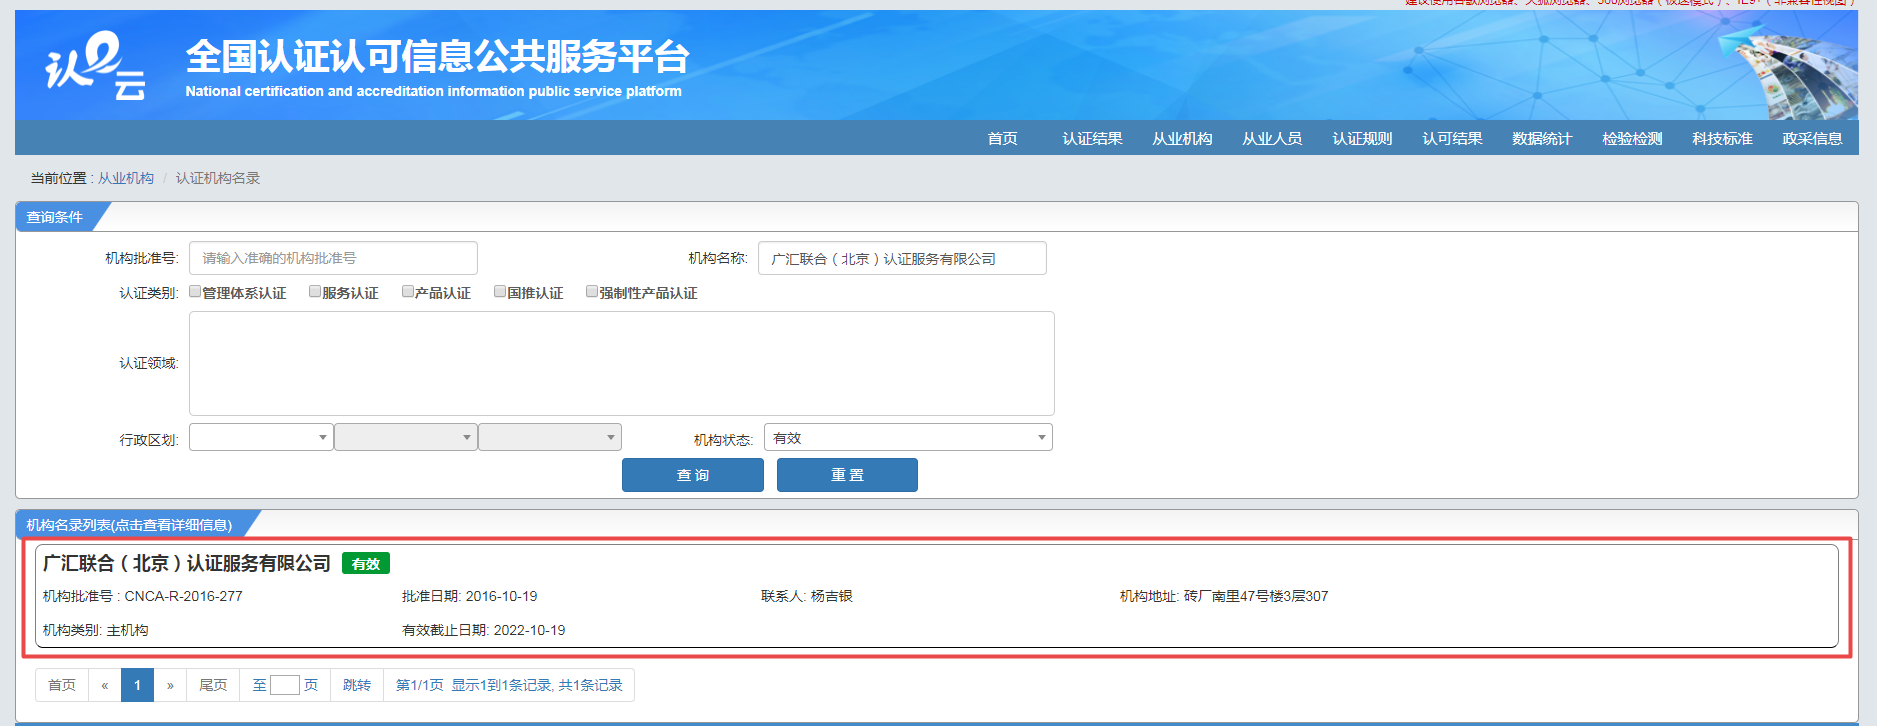 广汇联合（北京）认证服务有限公司机构许可证